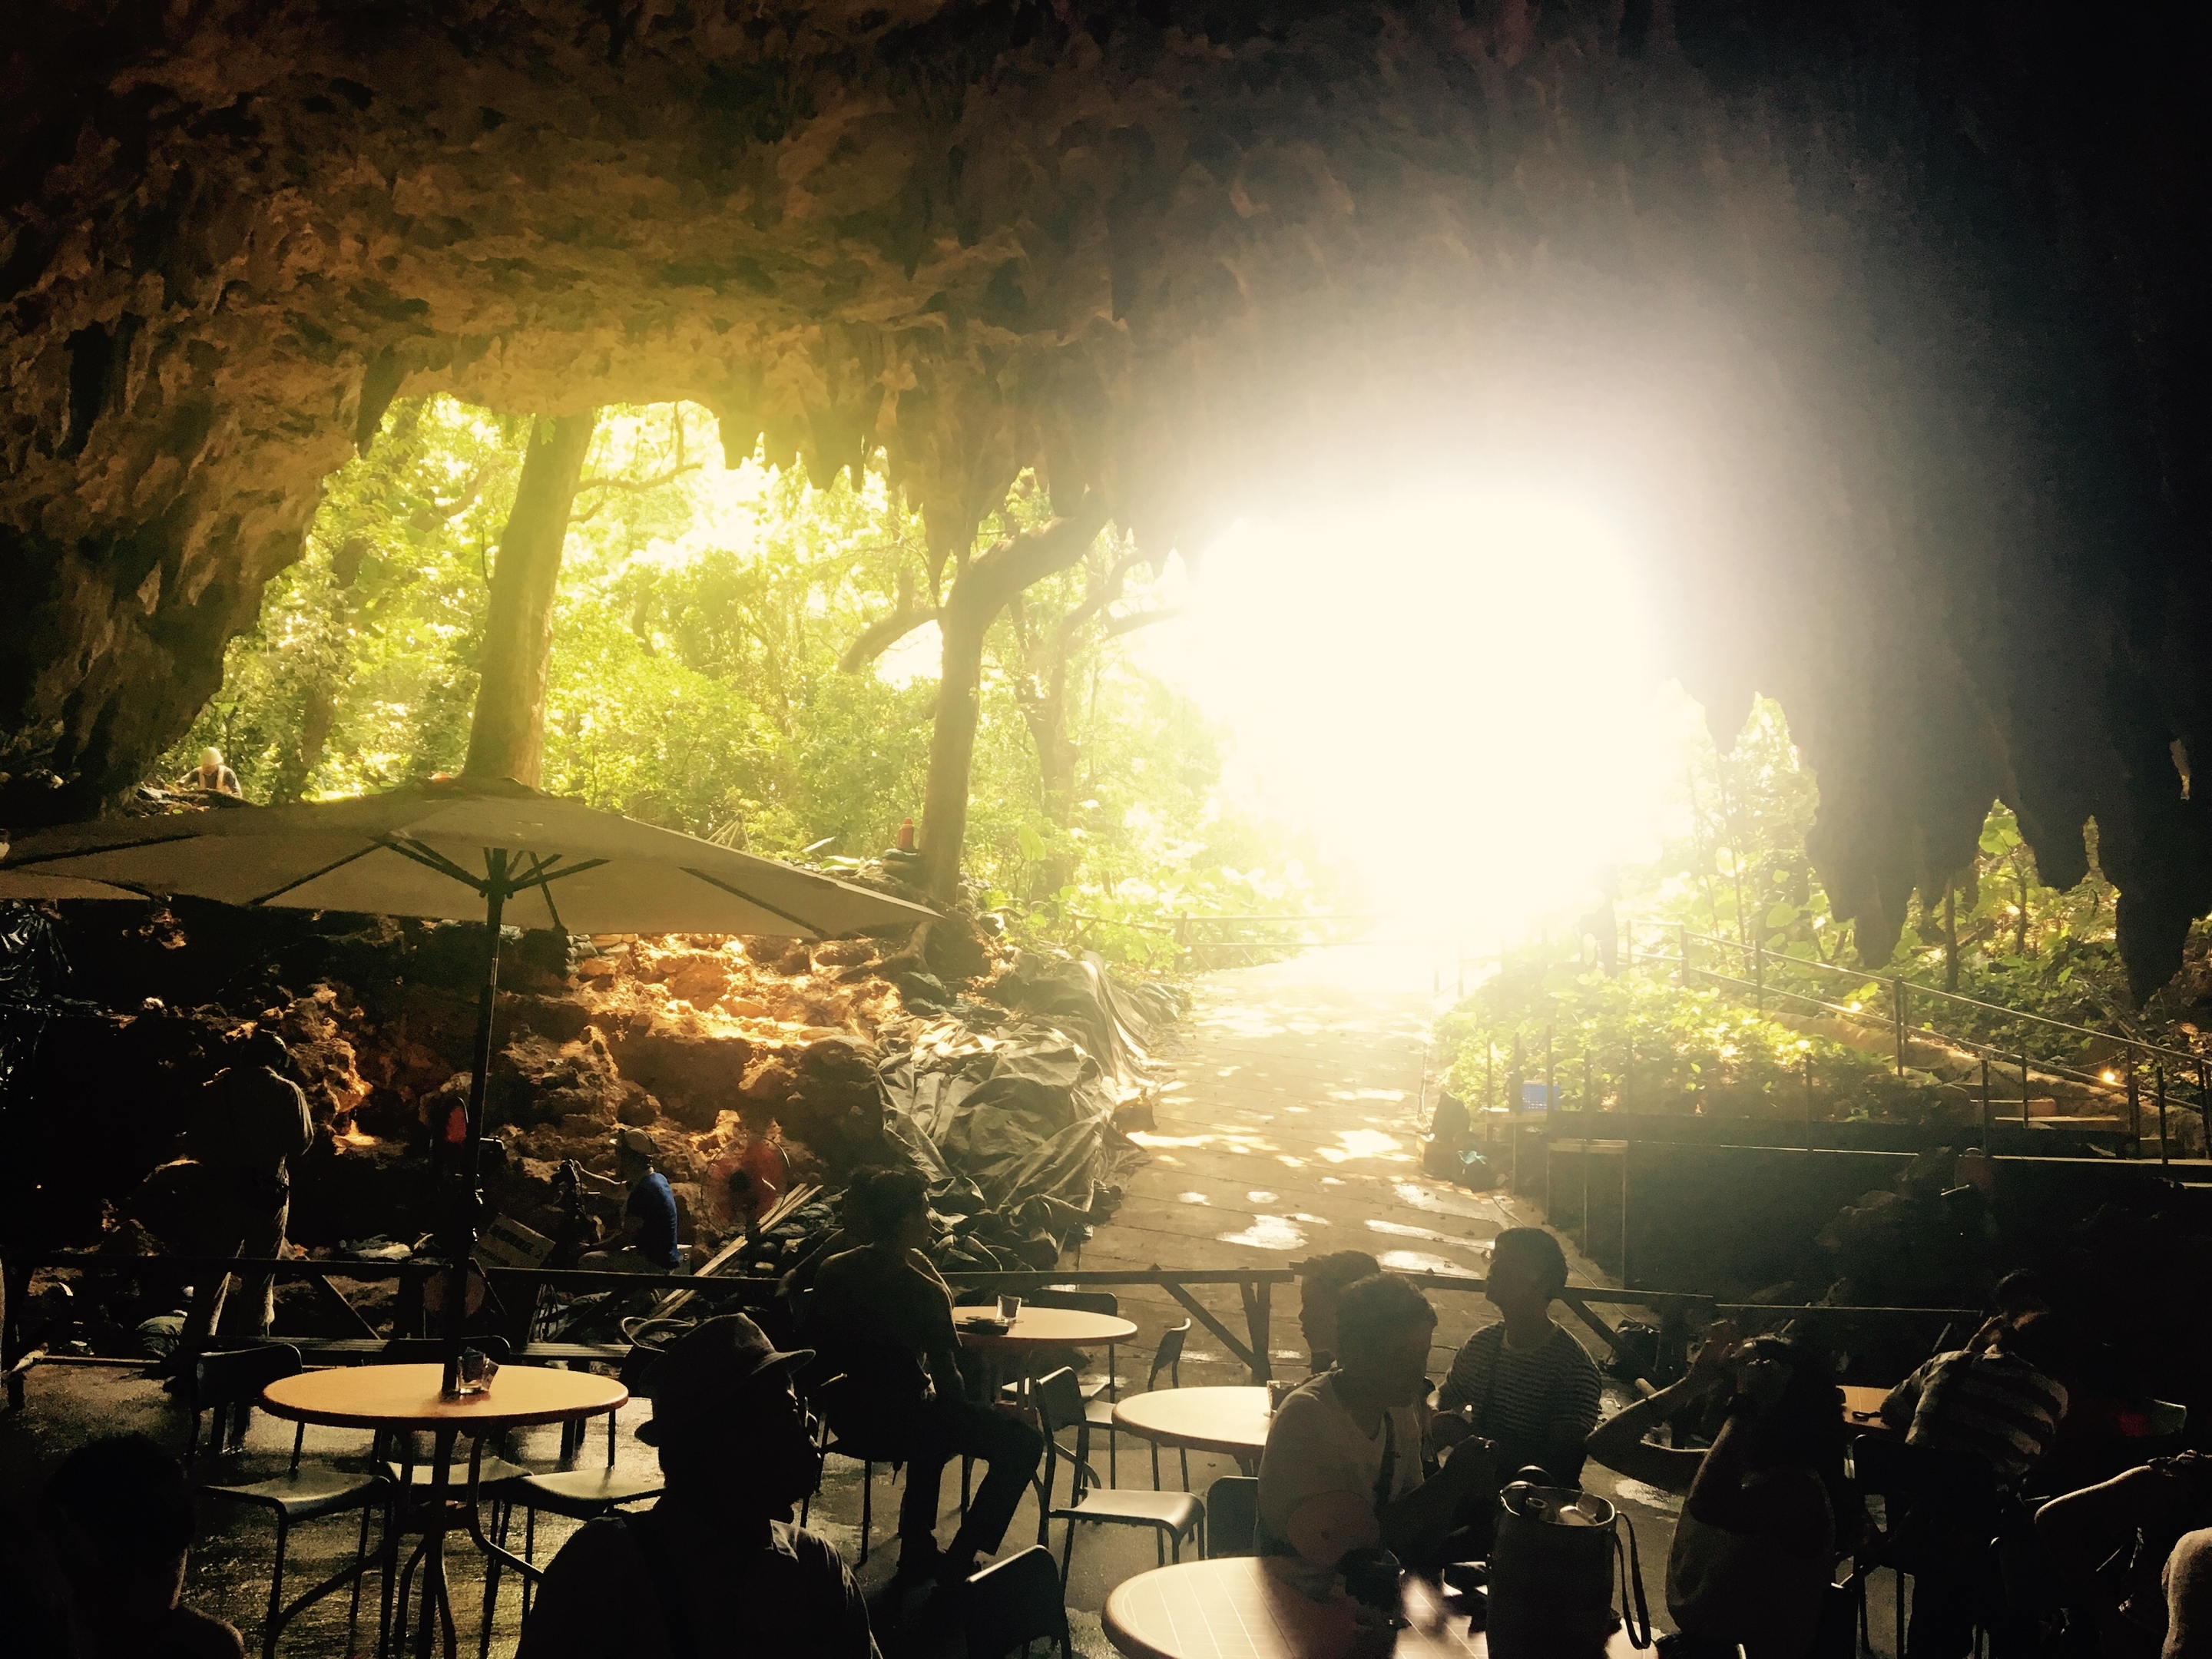 洞窟カフェ